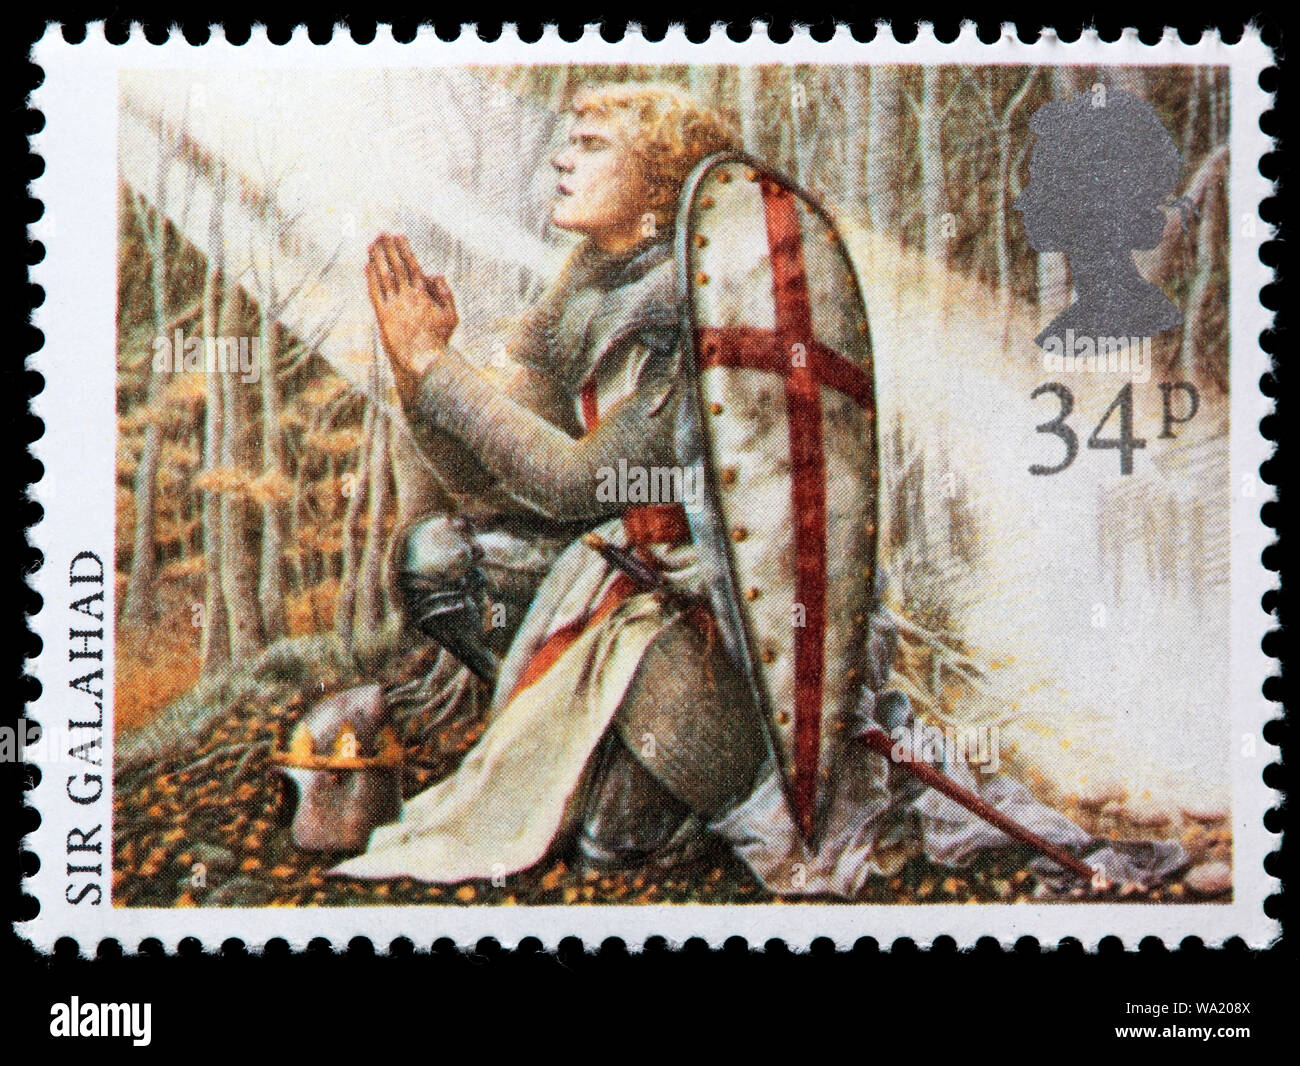 Sir Galahad, leggenda arturiana, francobollo, UK, 1985 Foto Stock